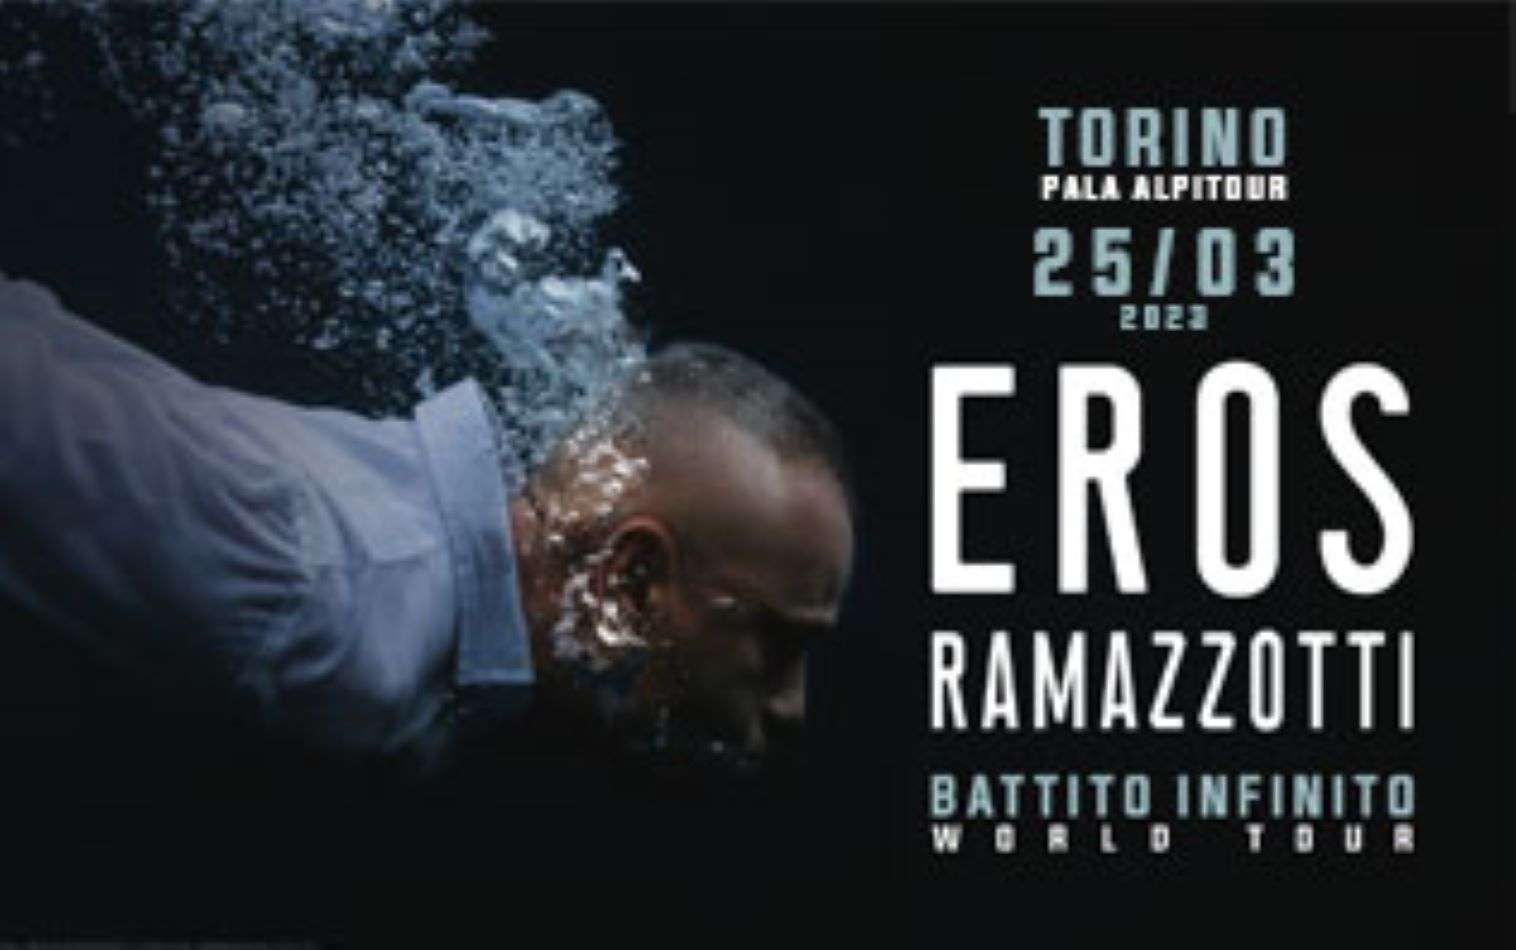 Eros Ramazzotti in un tour mondiale che toccherà Torino il 25 marzo 2023